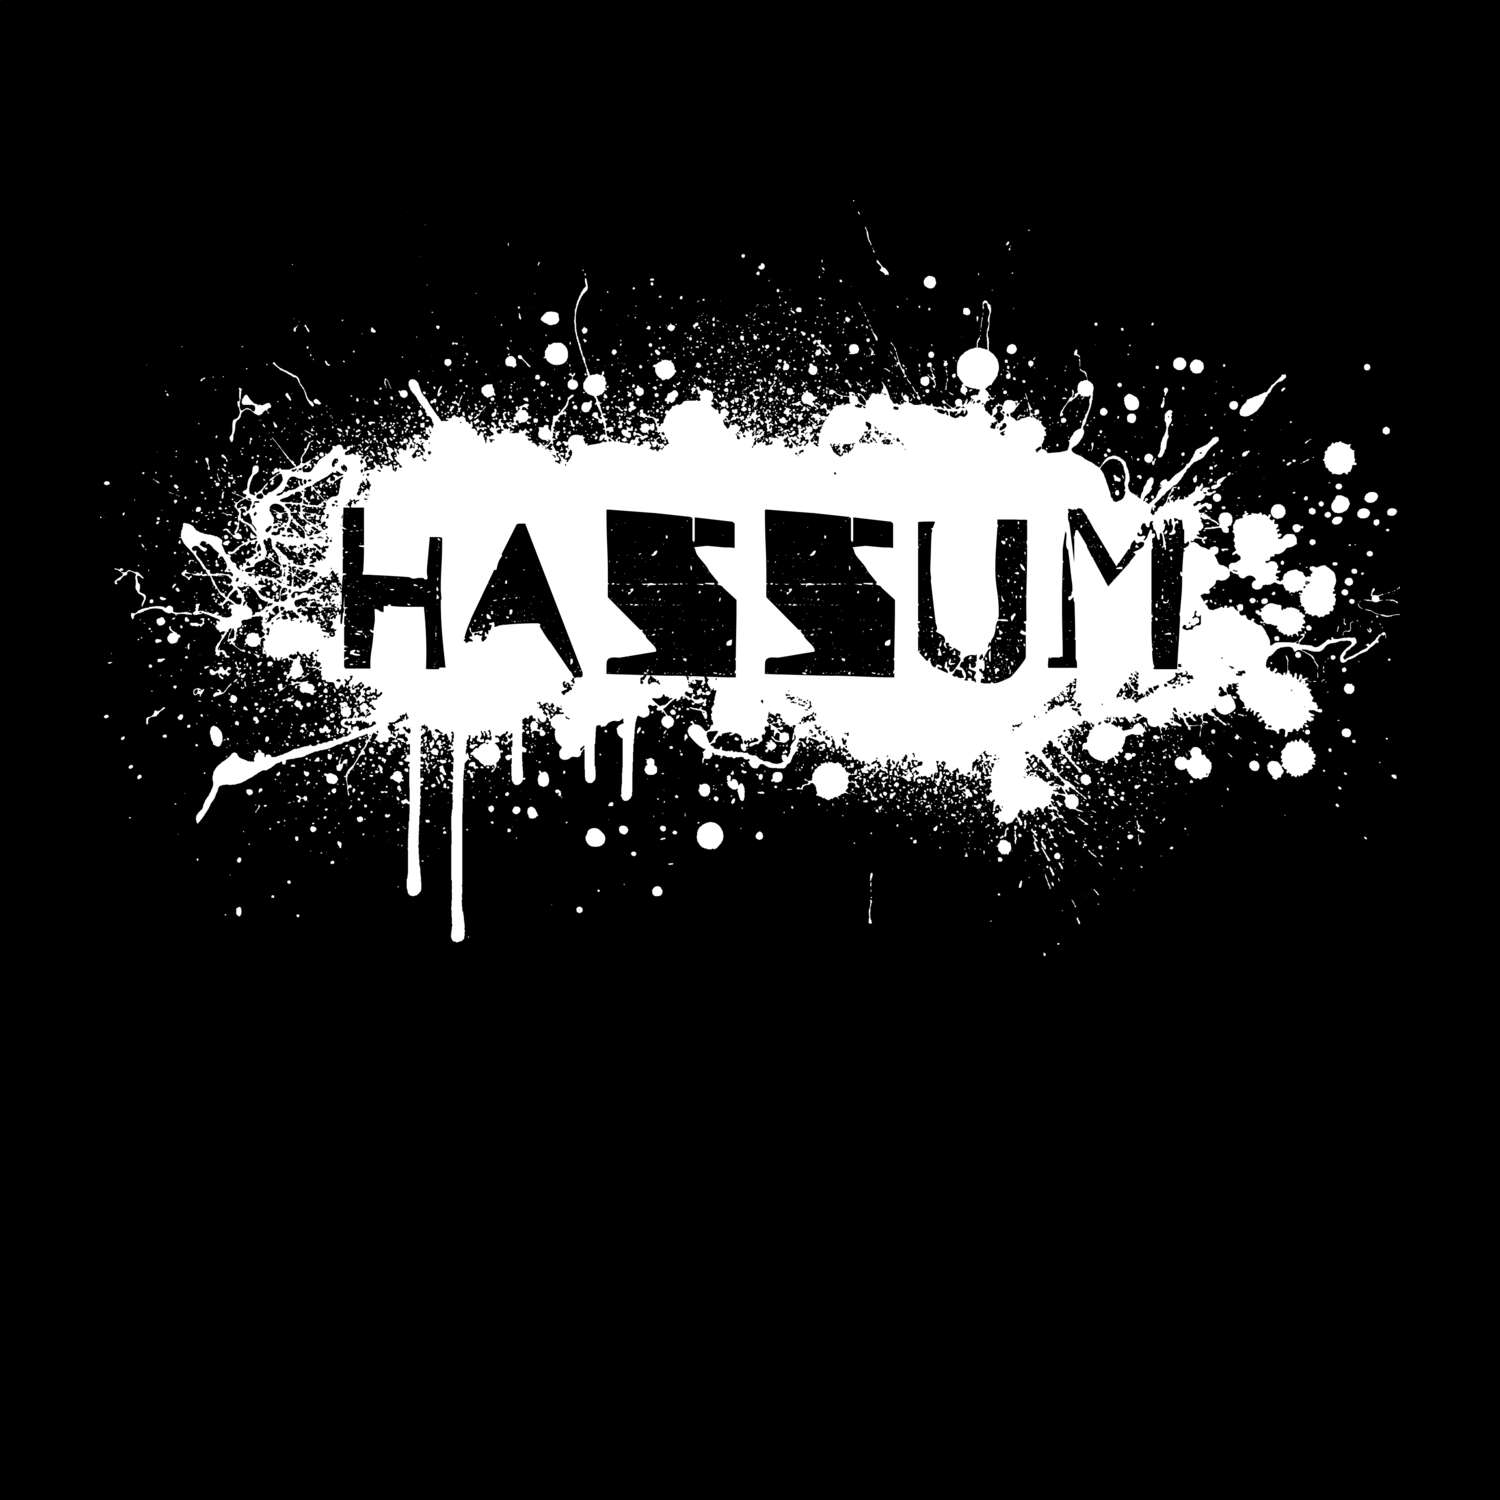 Hassum T-Shirt »Paint Splash Punk«